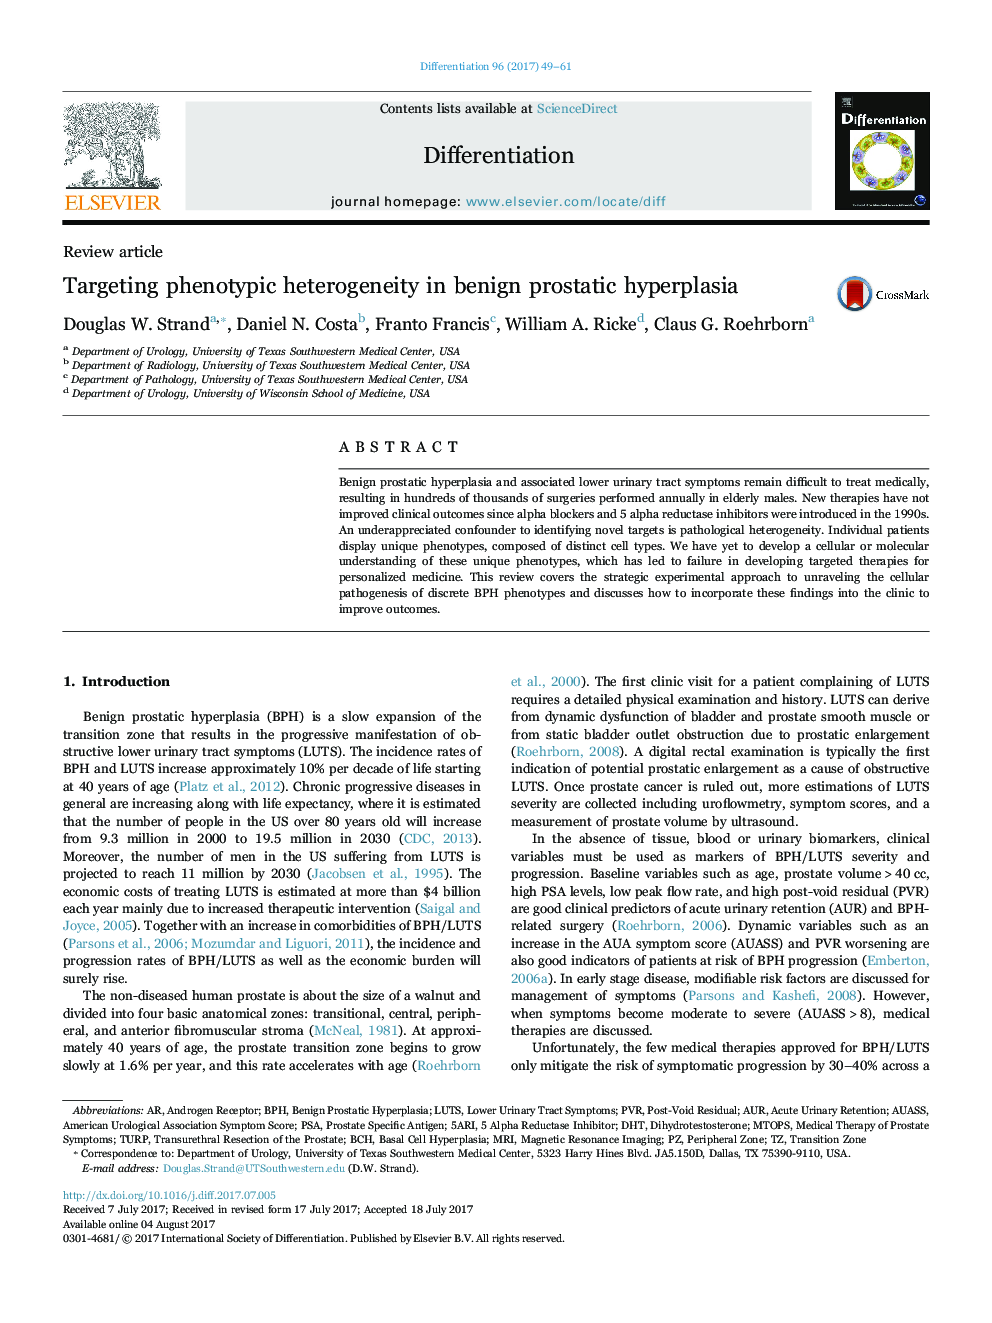 بررسی مقاله هدف ناهمگونی فنوتیپی در هیپرپلازی خوش خیم پروستات 